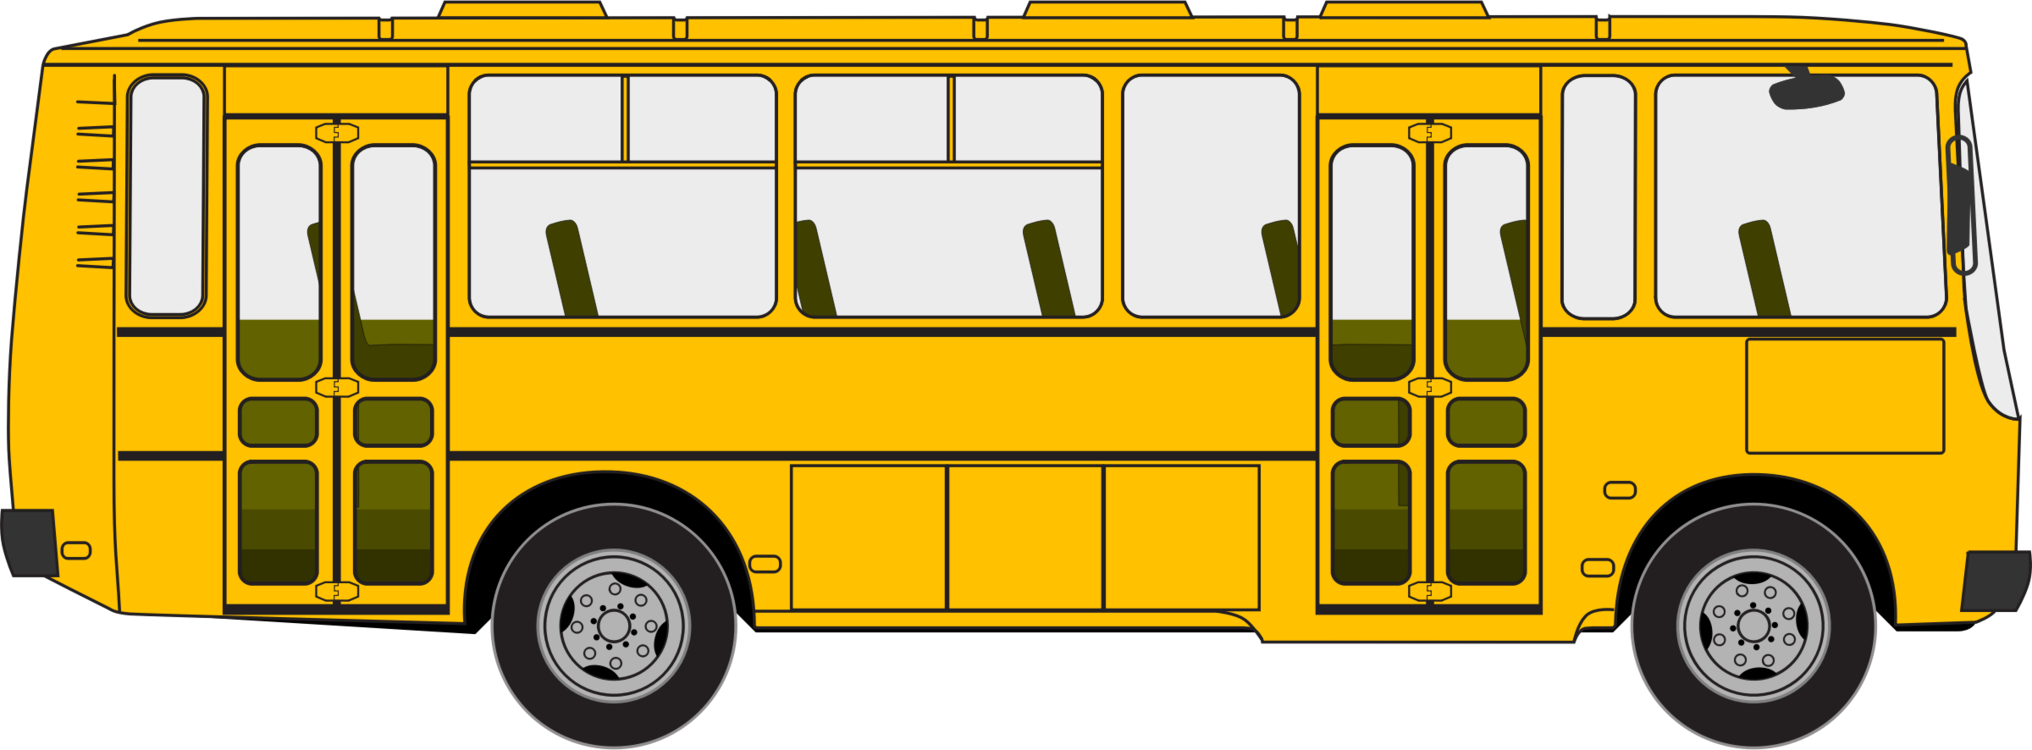 Commercial Vehicle,Double Decker Bus,Bus